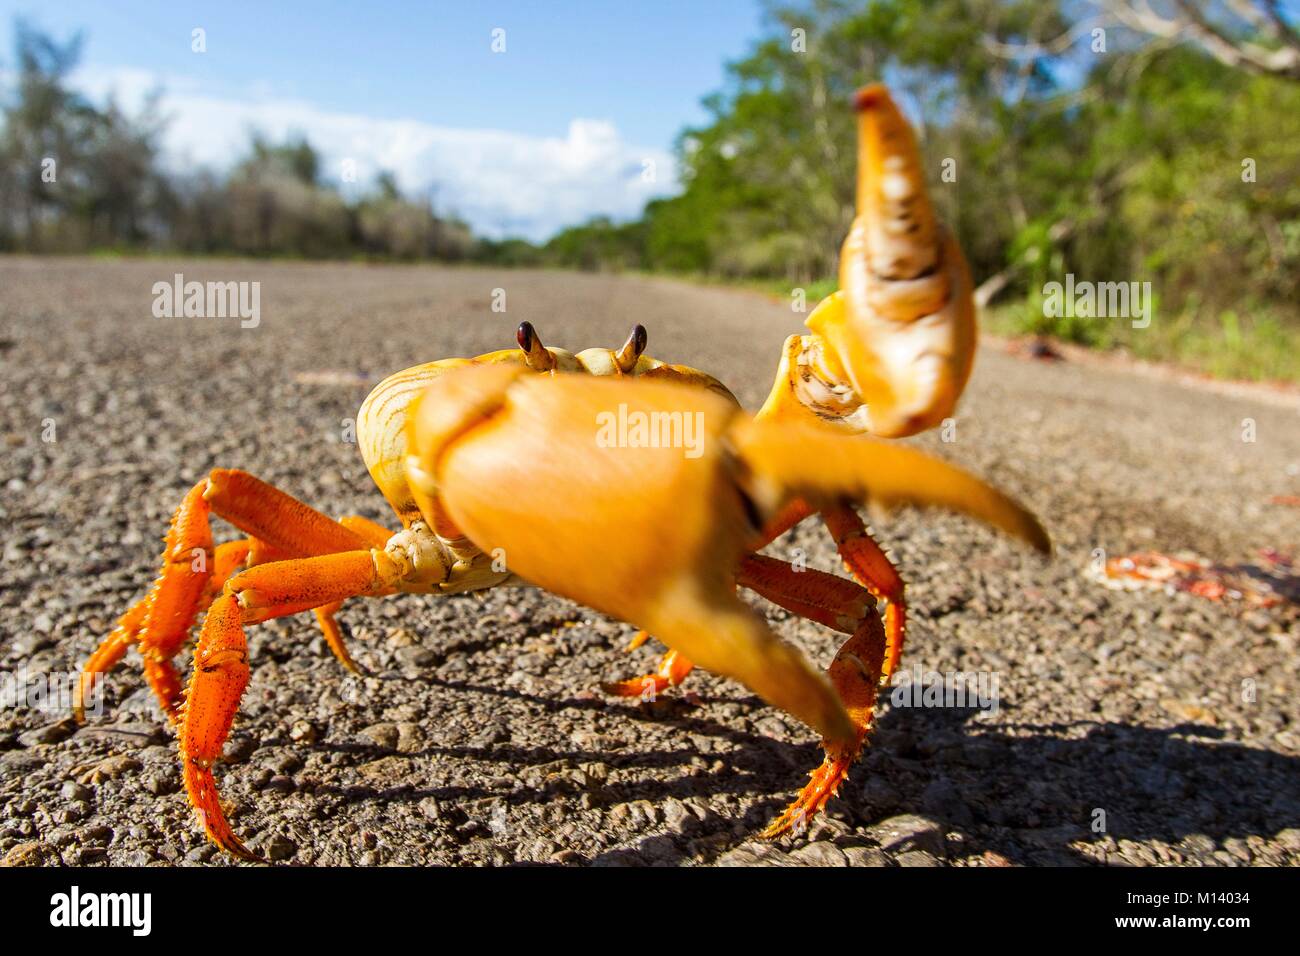 Cuba, péninsule de Zapata, Baie des cochons, les crabes à traverser la rue pour se reproduire Banque D'Images